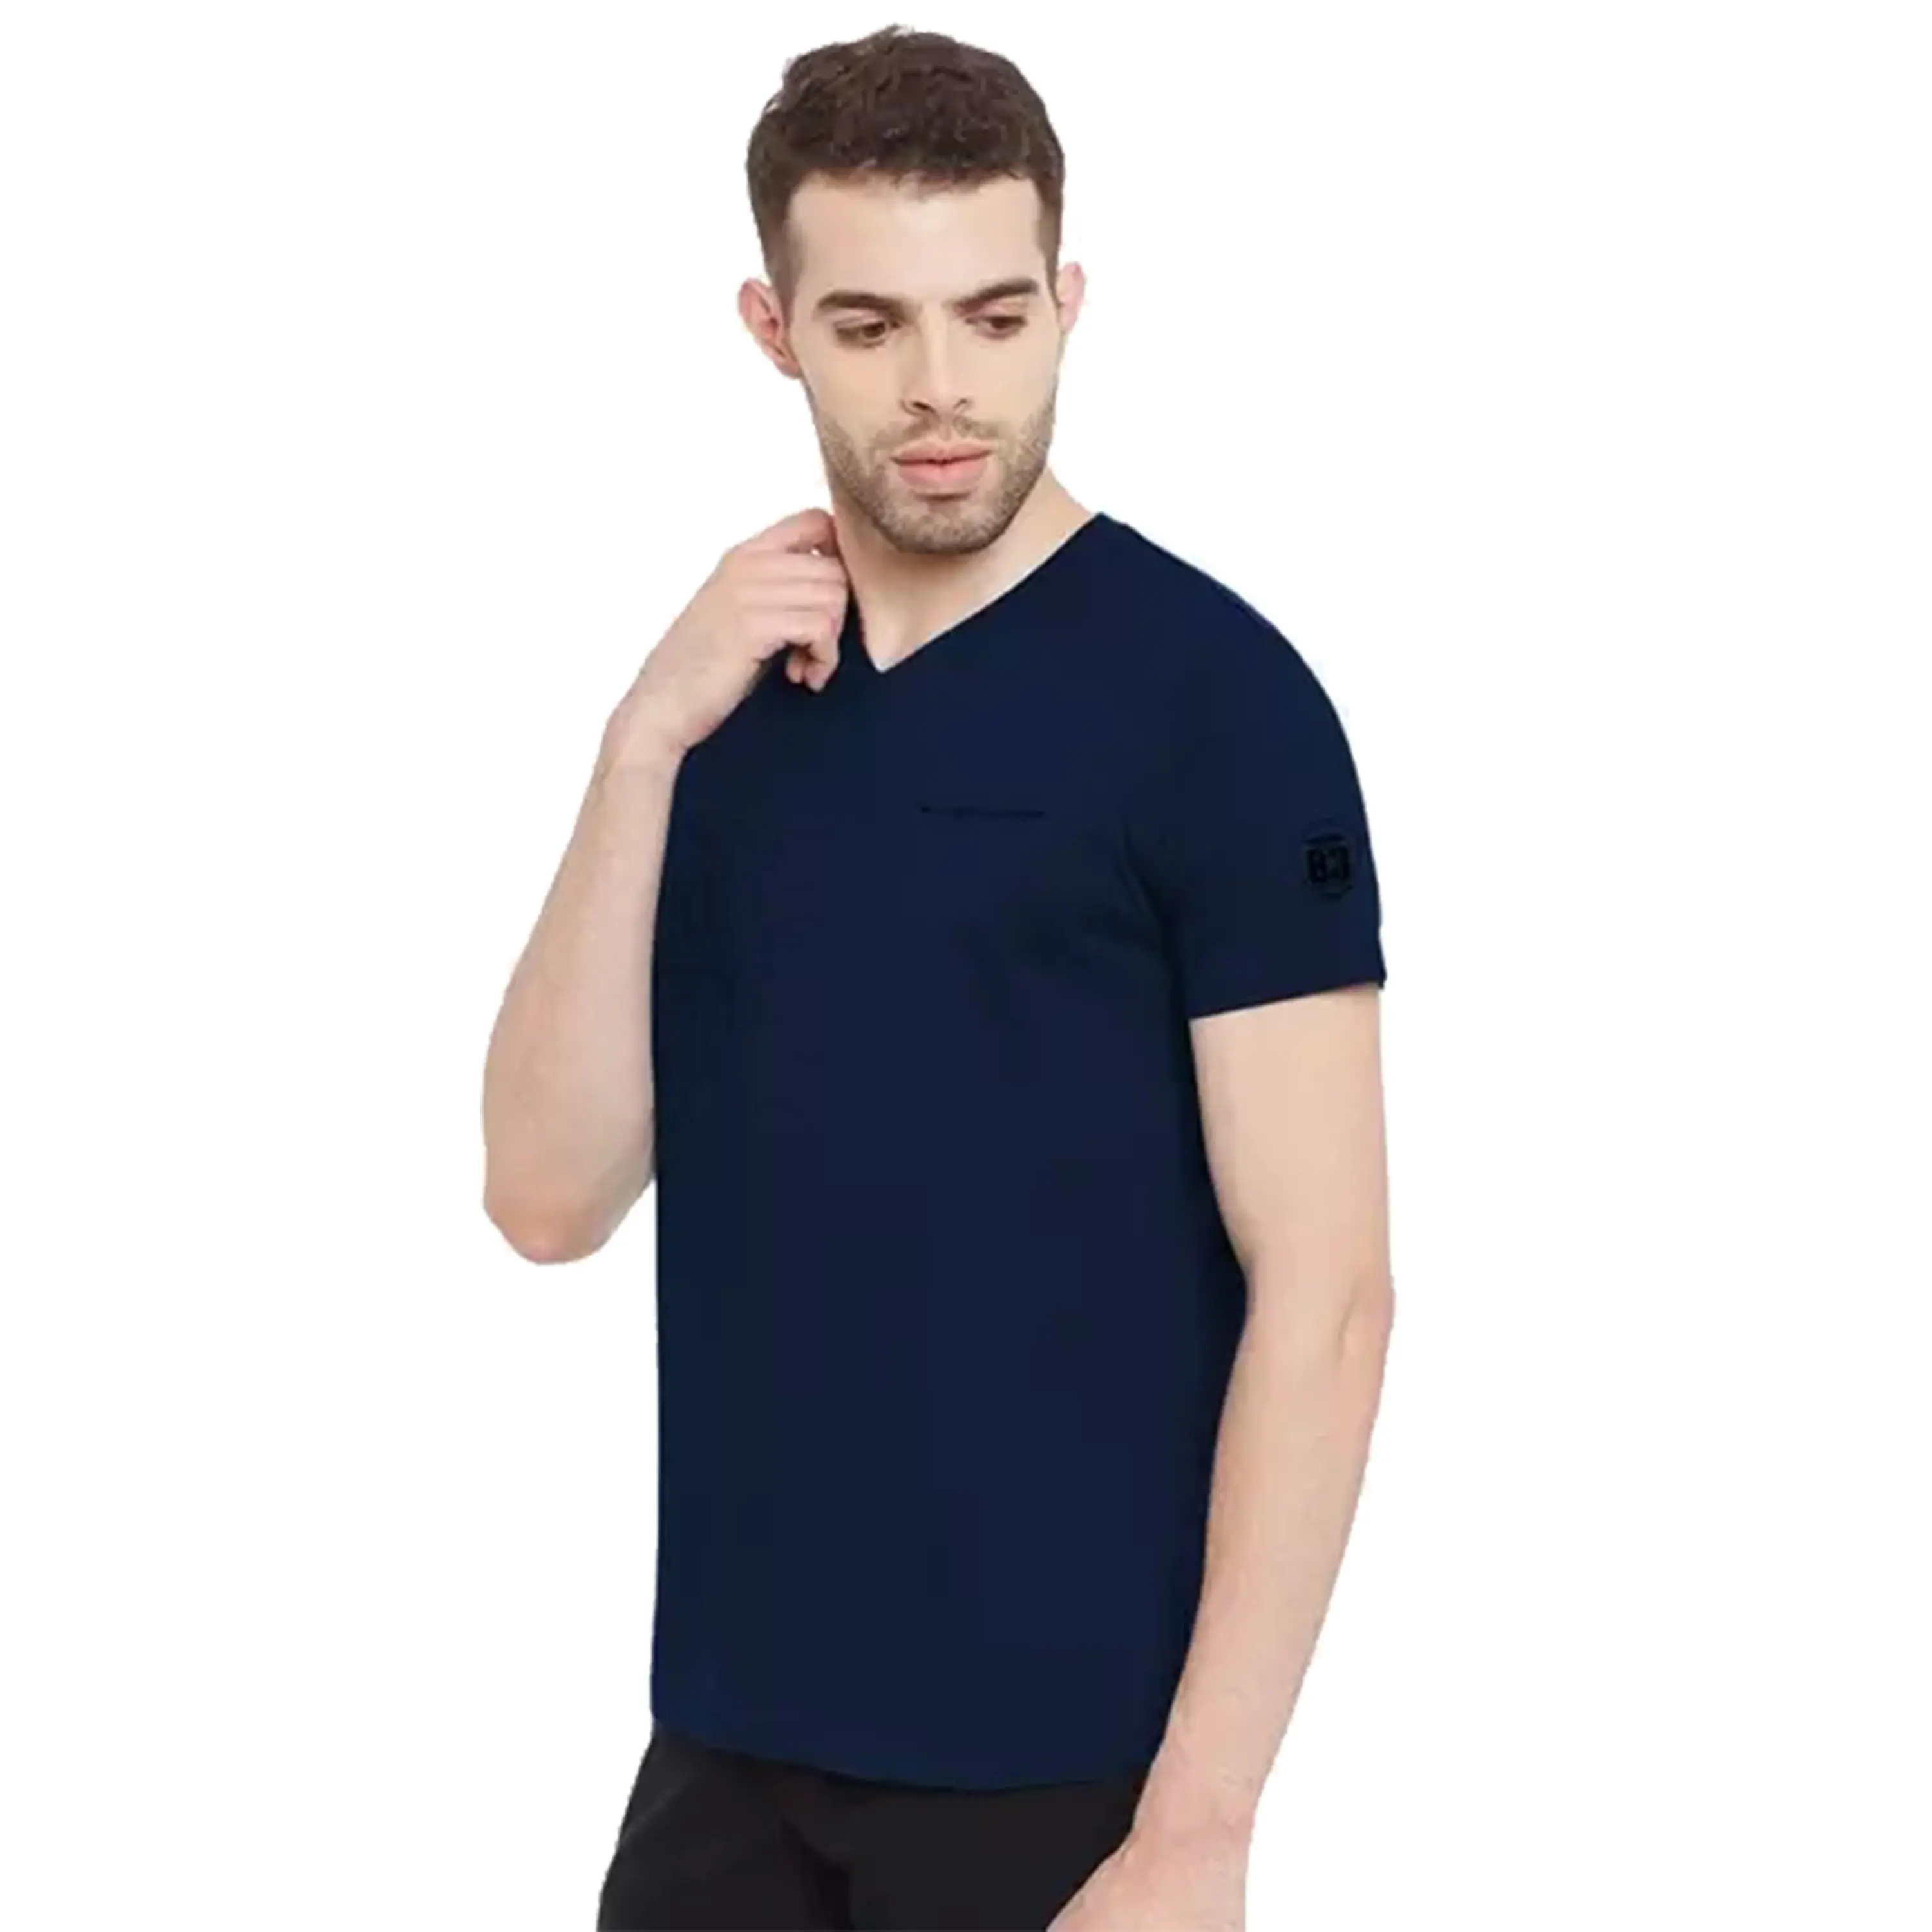 T-shirt manches courtes col en v pour homme, haute qualité, prix bas bas bas, modèle du Bangladesh, 2020